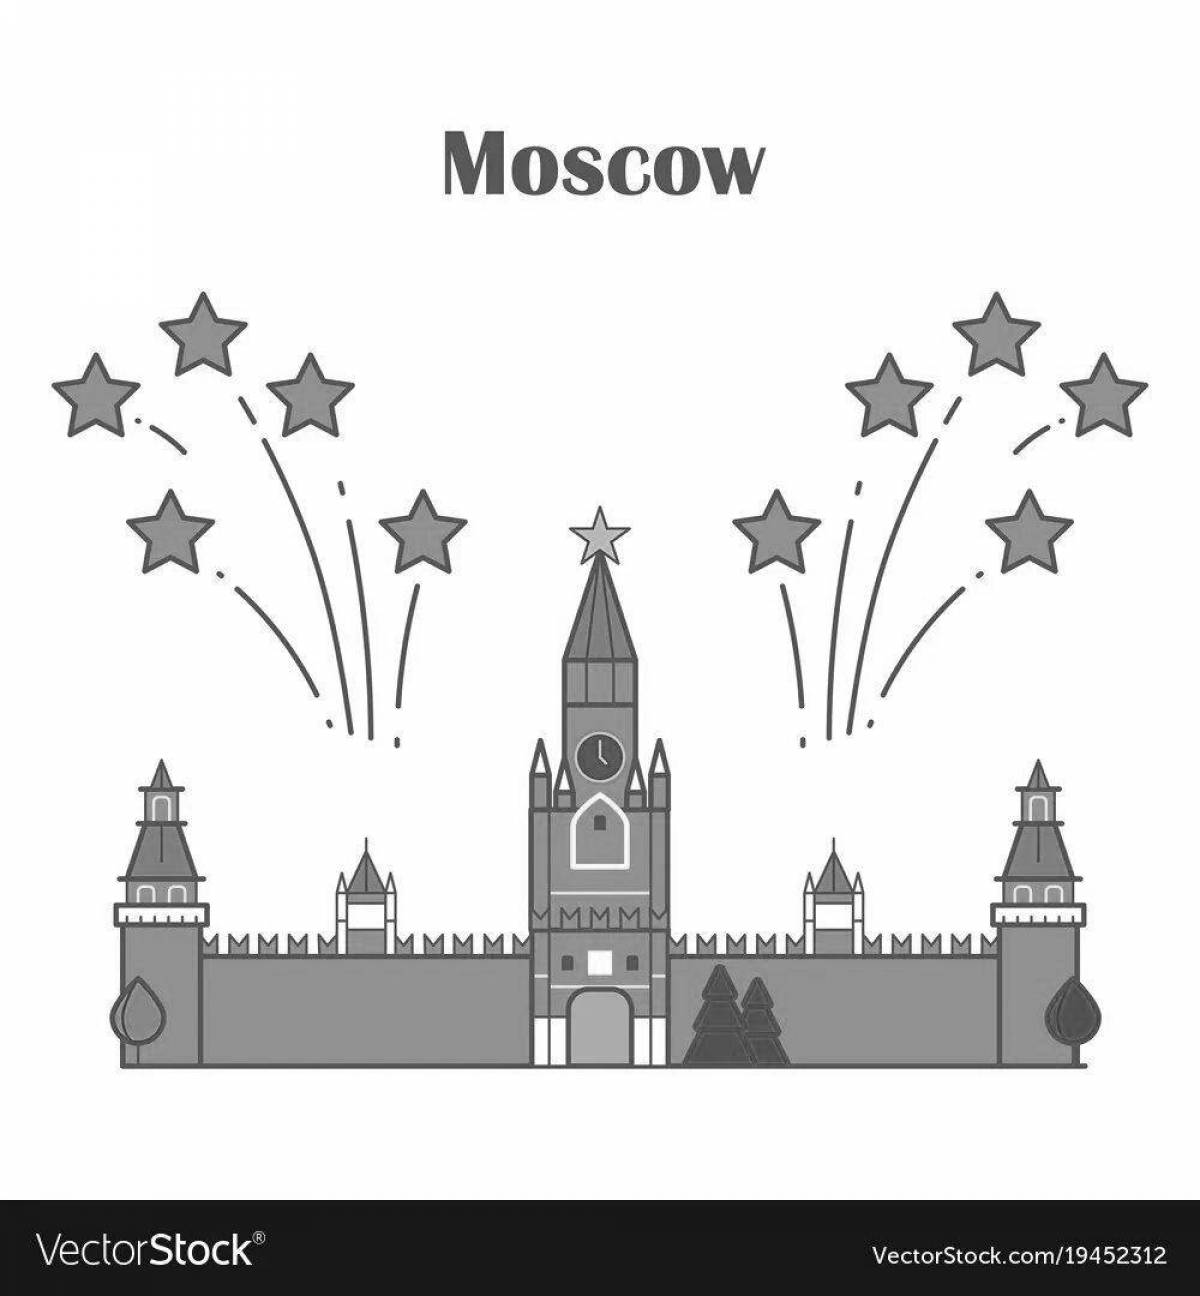 Wonderful Kremlin coloring book for preschoolers